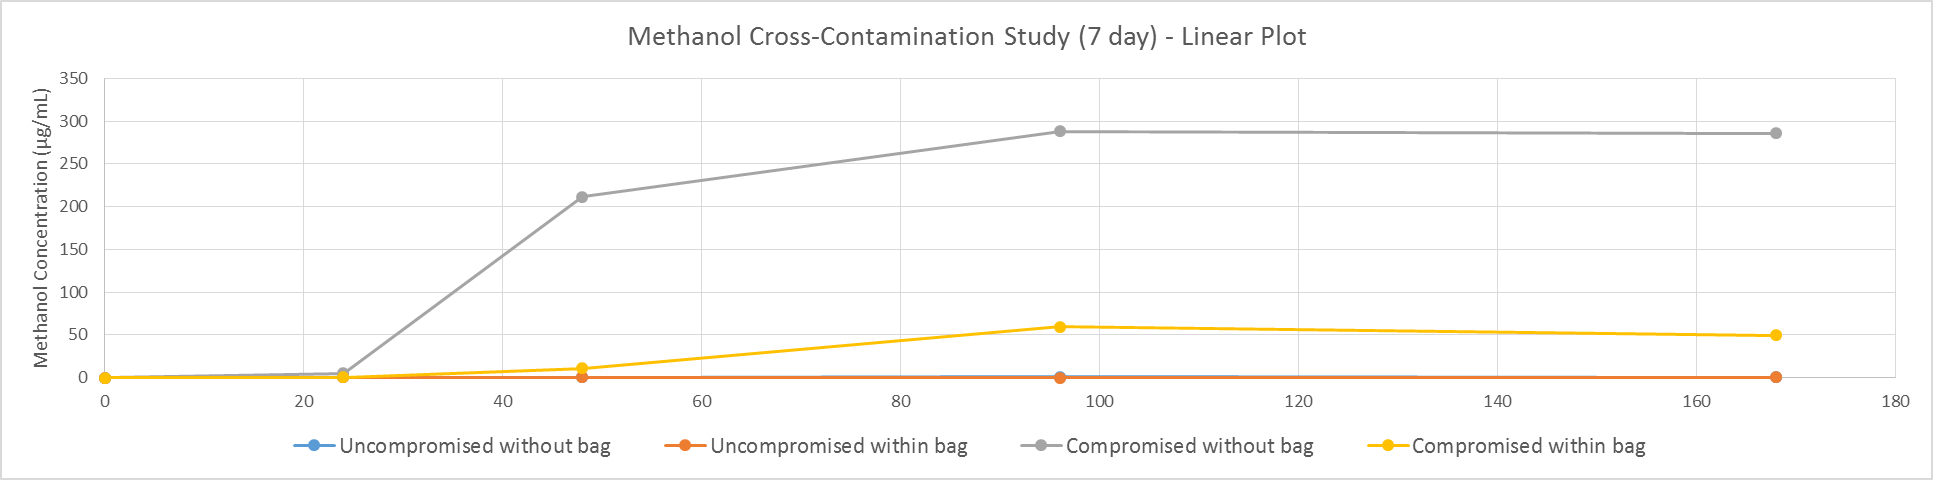 Linear Plot of Methanol Cross-Contamination Data Set